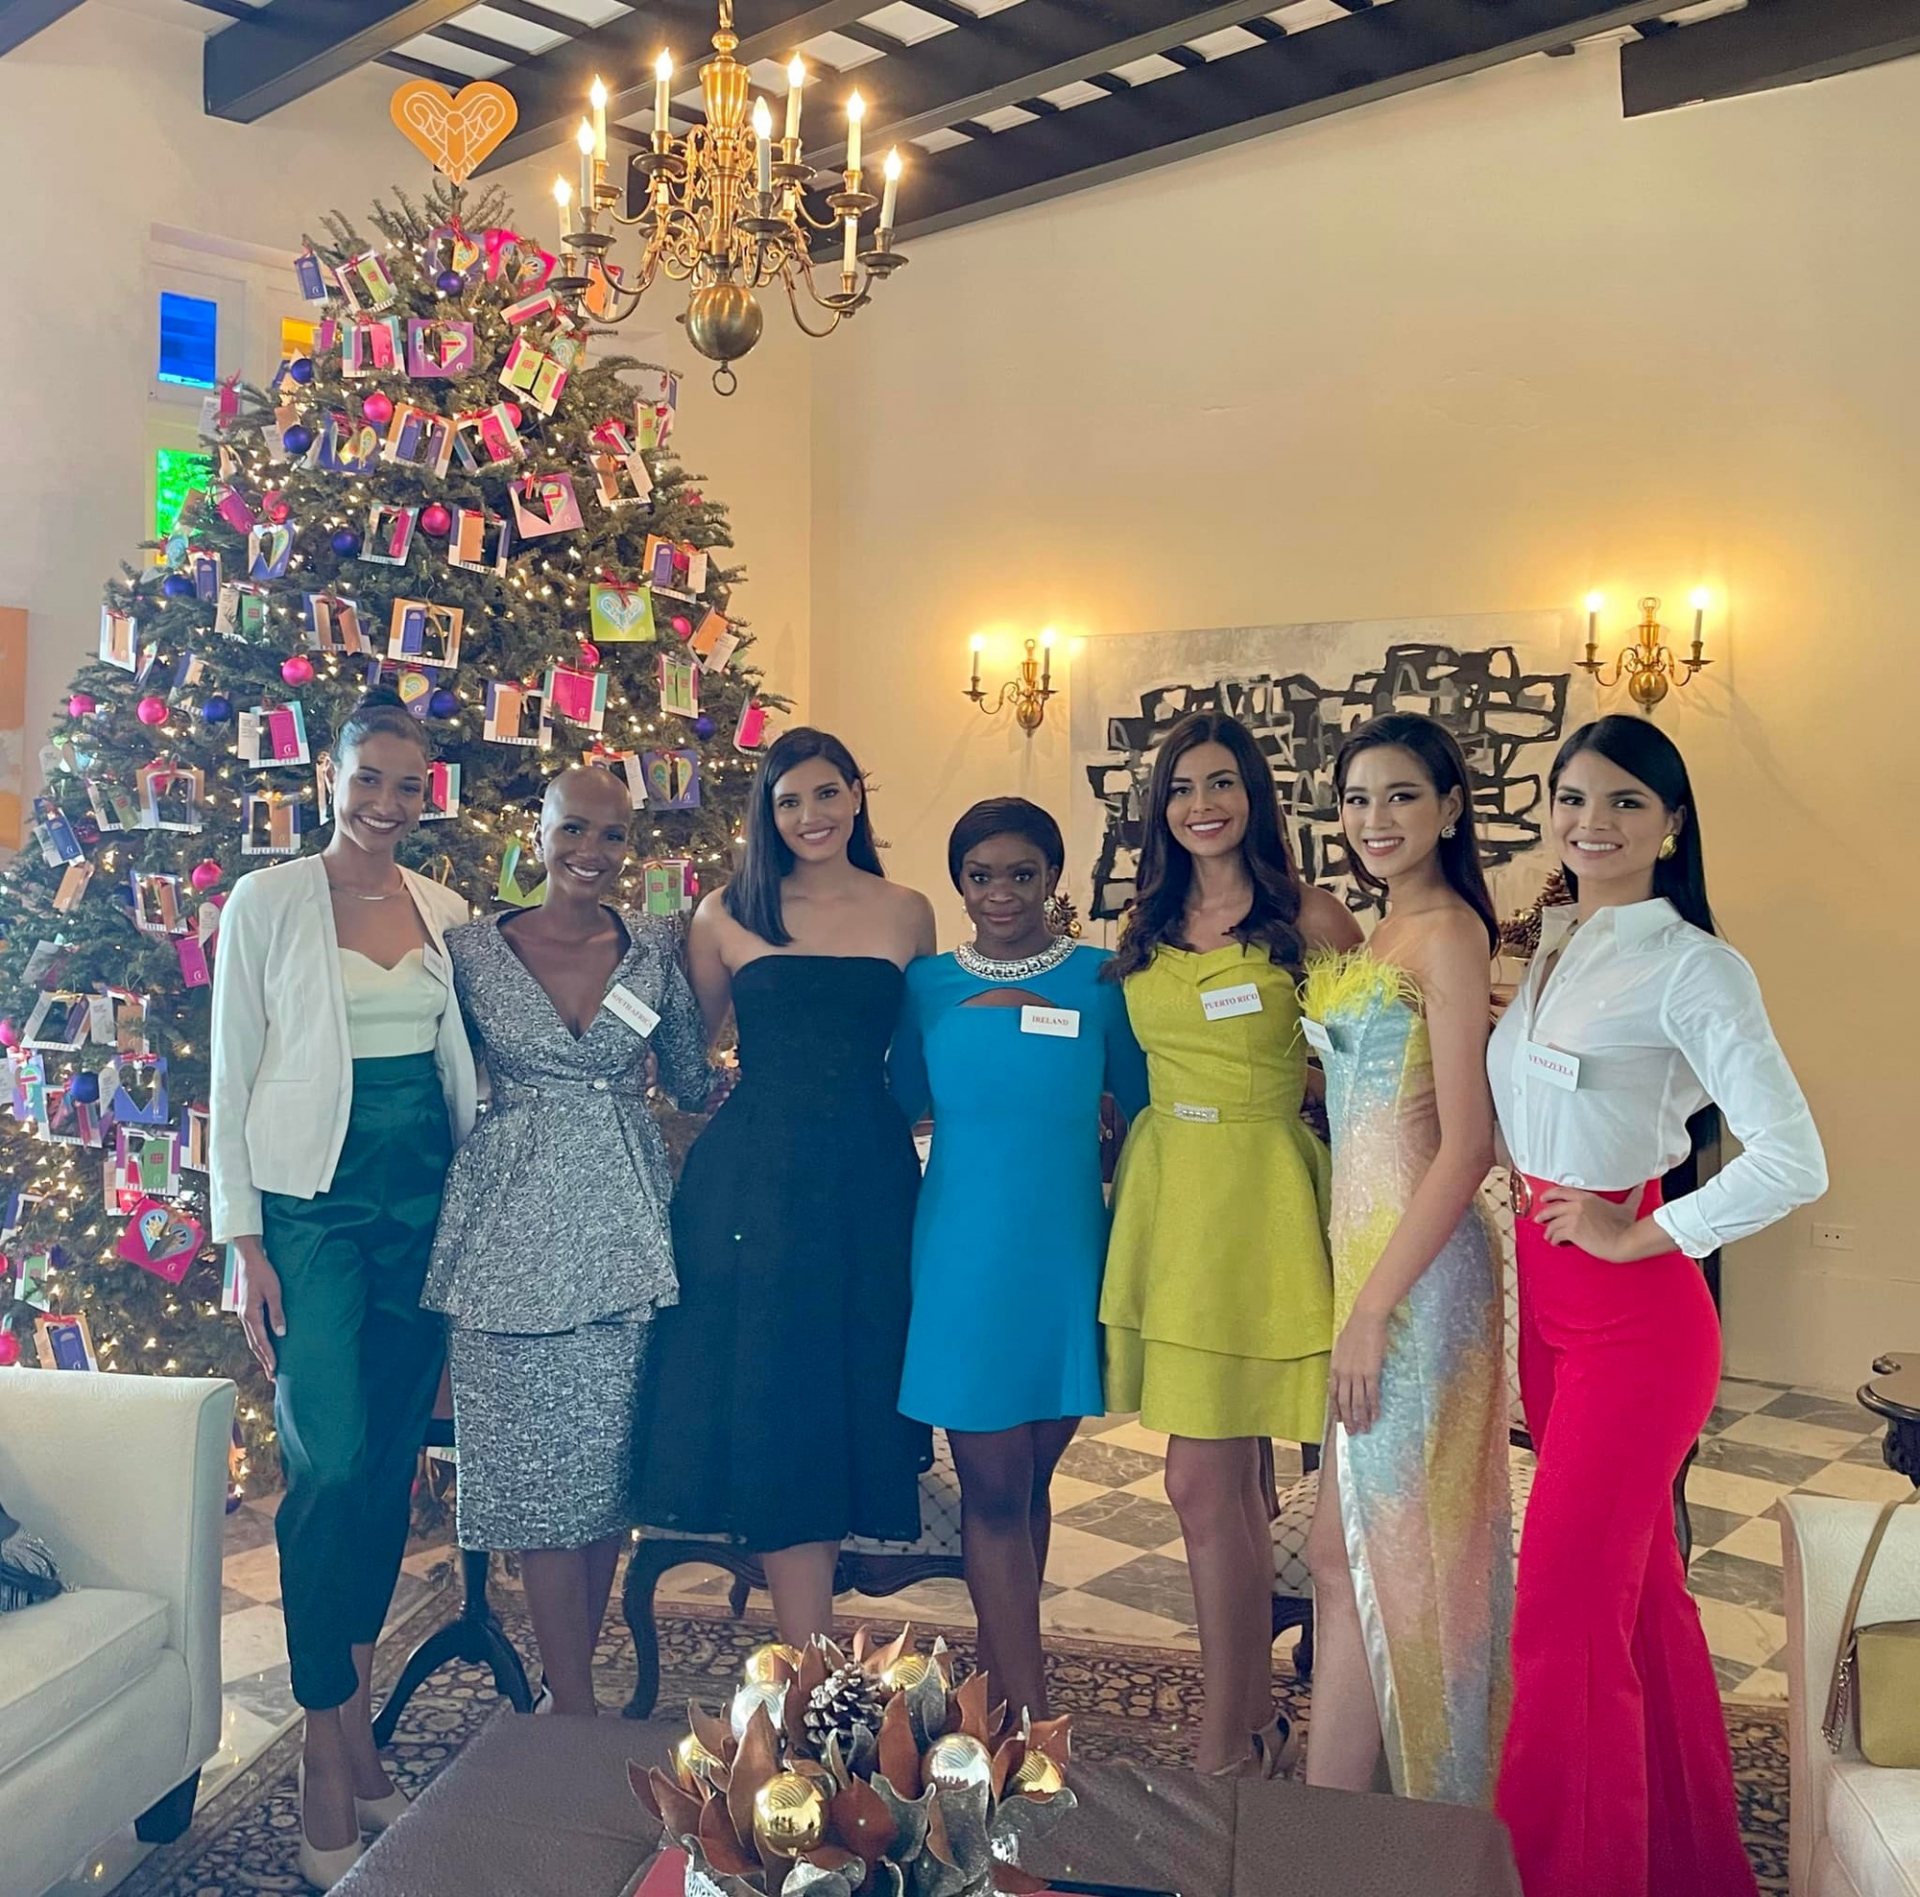 Hoa hậu Đỗ Thị Hà cùng 5 thí sinh khác trong hoạt động mới nhất, đếm thăm văn phòng Thống đốc tại Puerto Rico